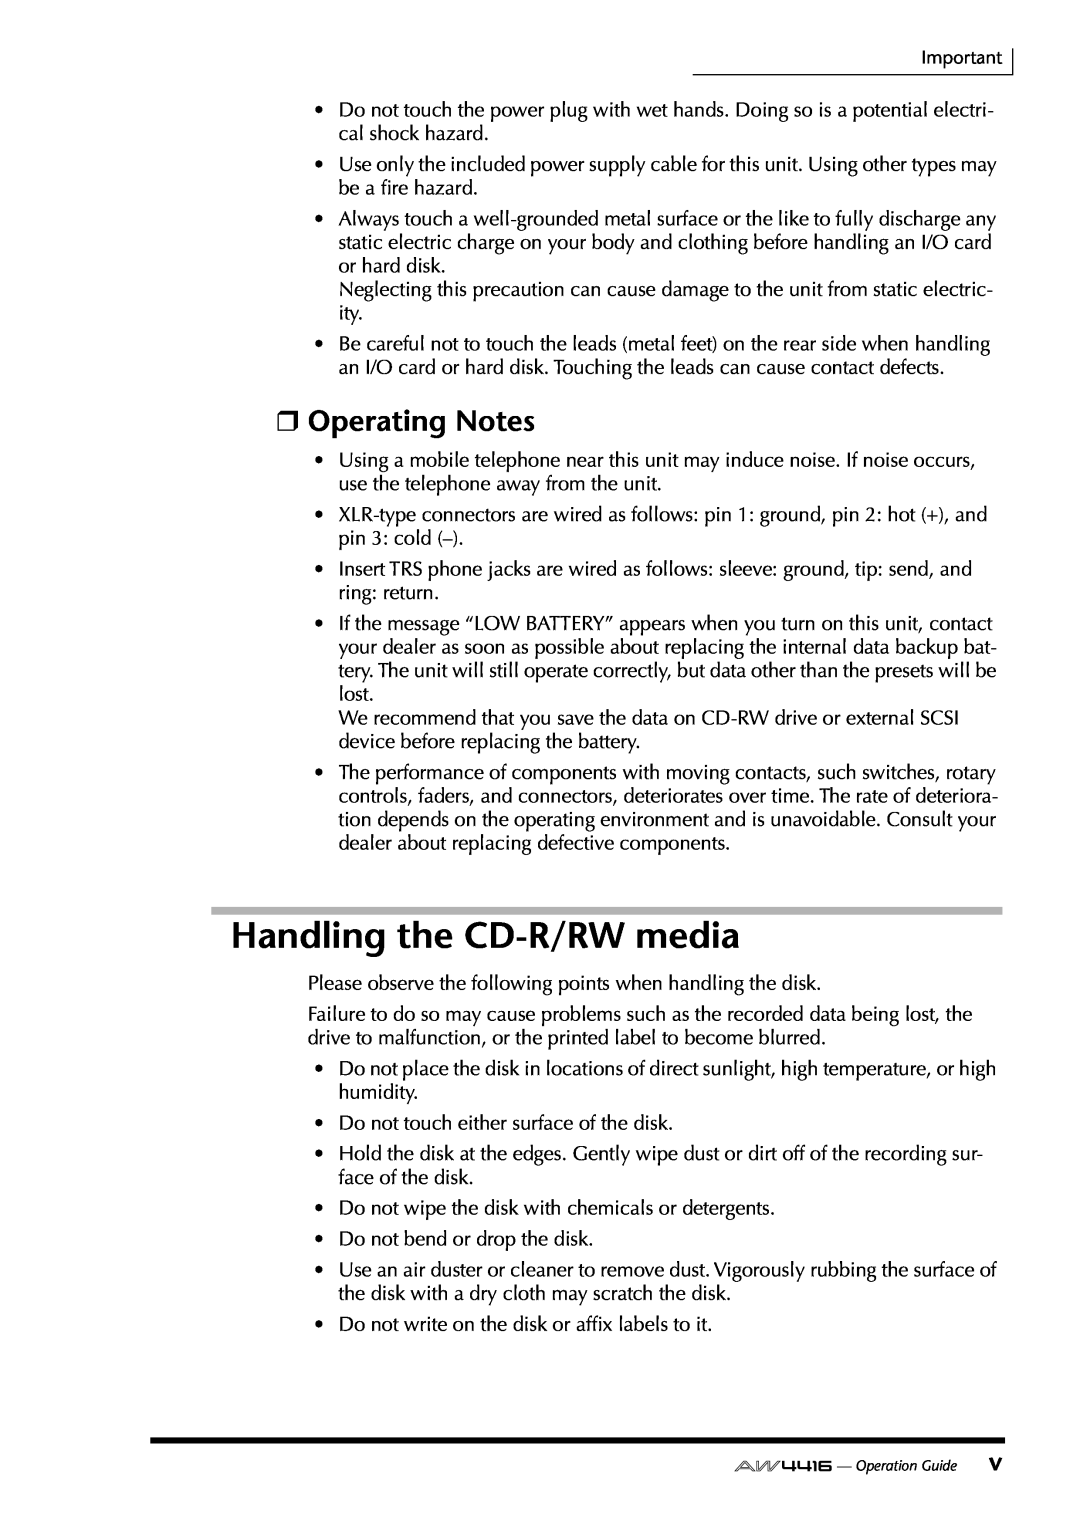 Yamaha AW4416 manual Handling the CD-R/RWmedia, Operating Notes 